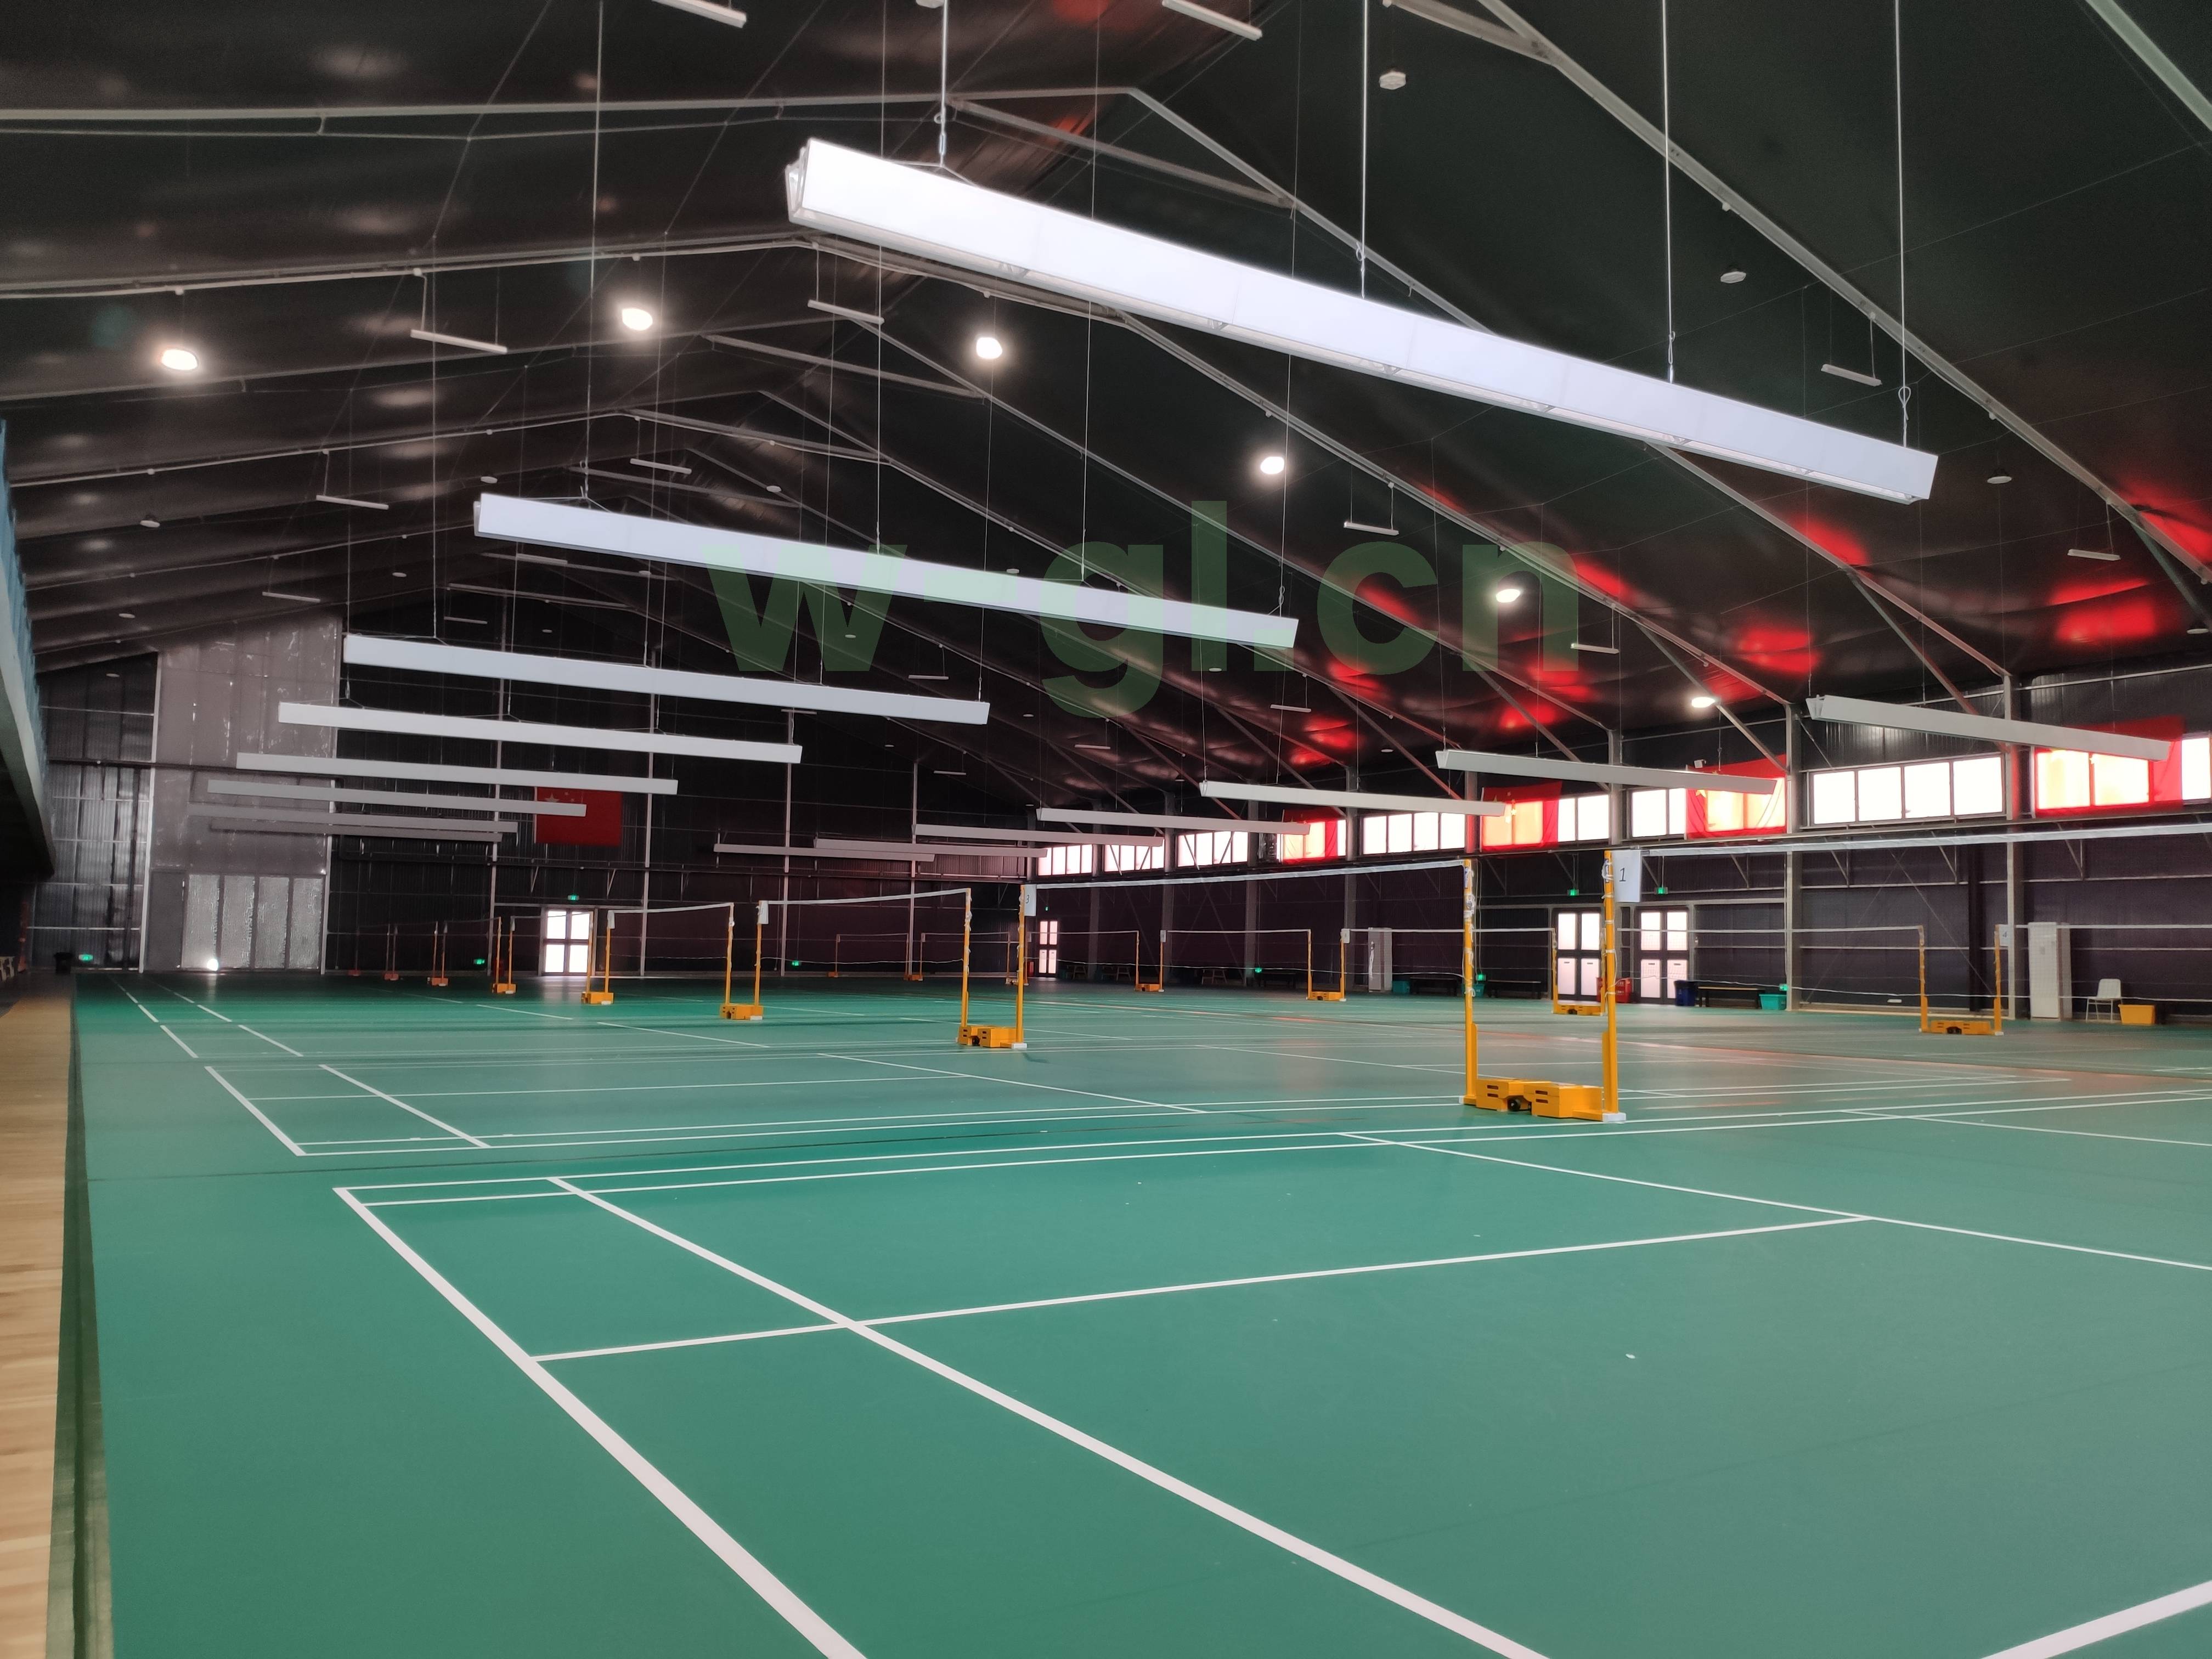 室内PVC羽毛球场-羽毛球场-产品展示北京顺祥隆建设工程有限公司